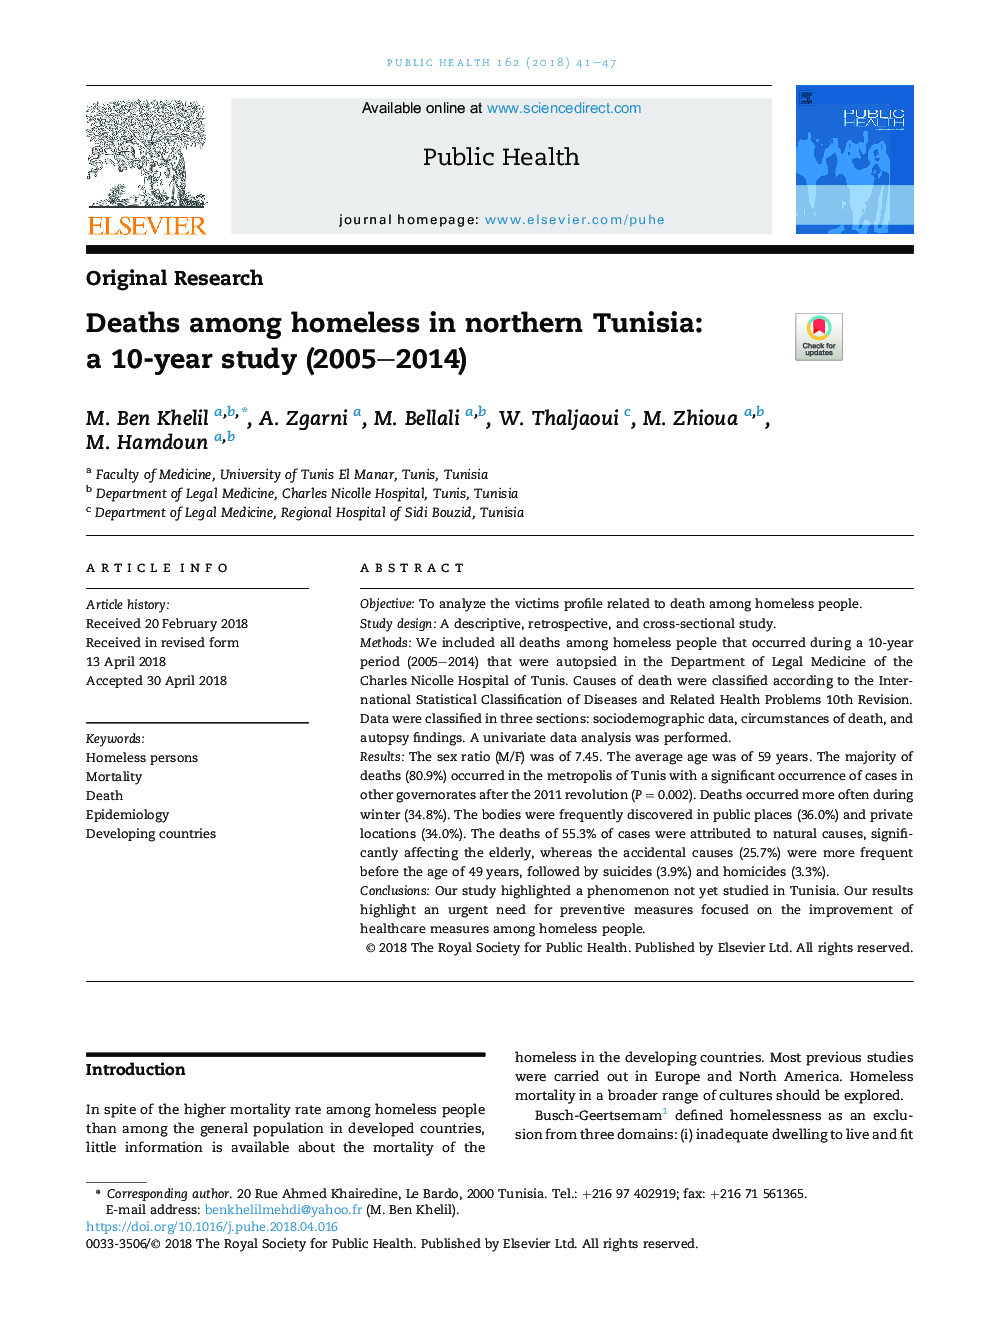 مرگ در میان افراد بی خانمان در شمال تونس: یک مطالعه 10 ساله (2005-2014) 